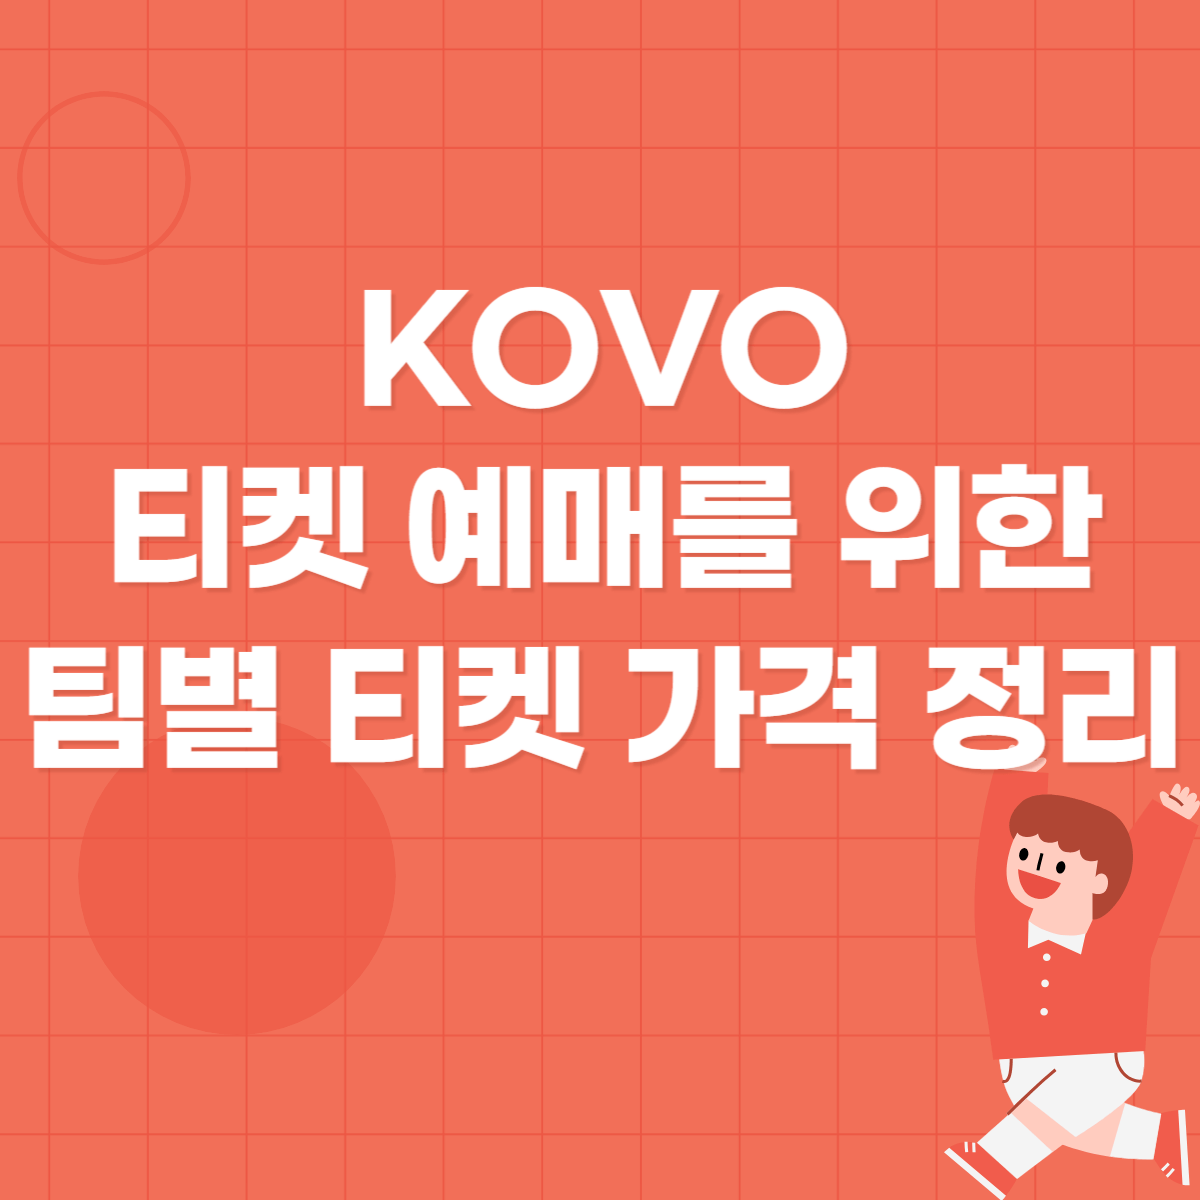 KOVO 티켓 예매를 위한 팀별 티켓 가격 정리